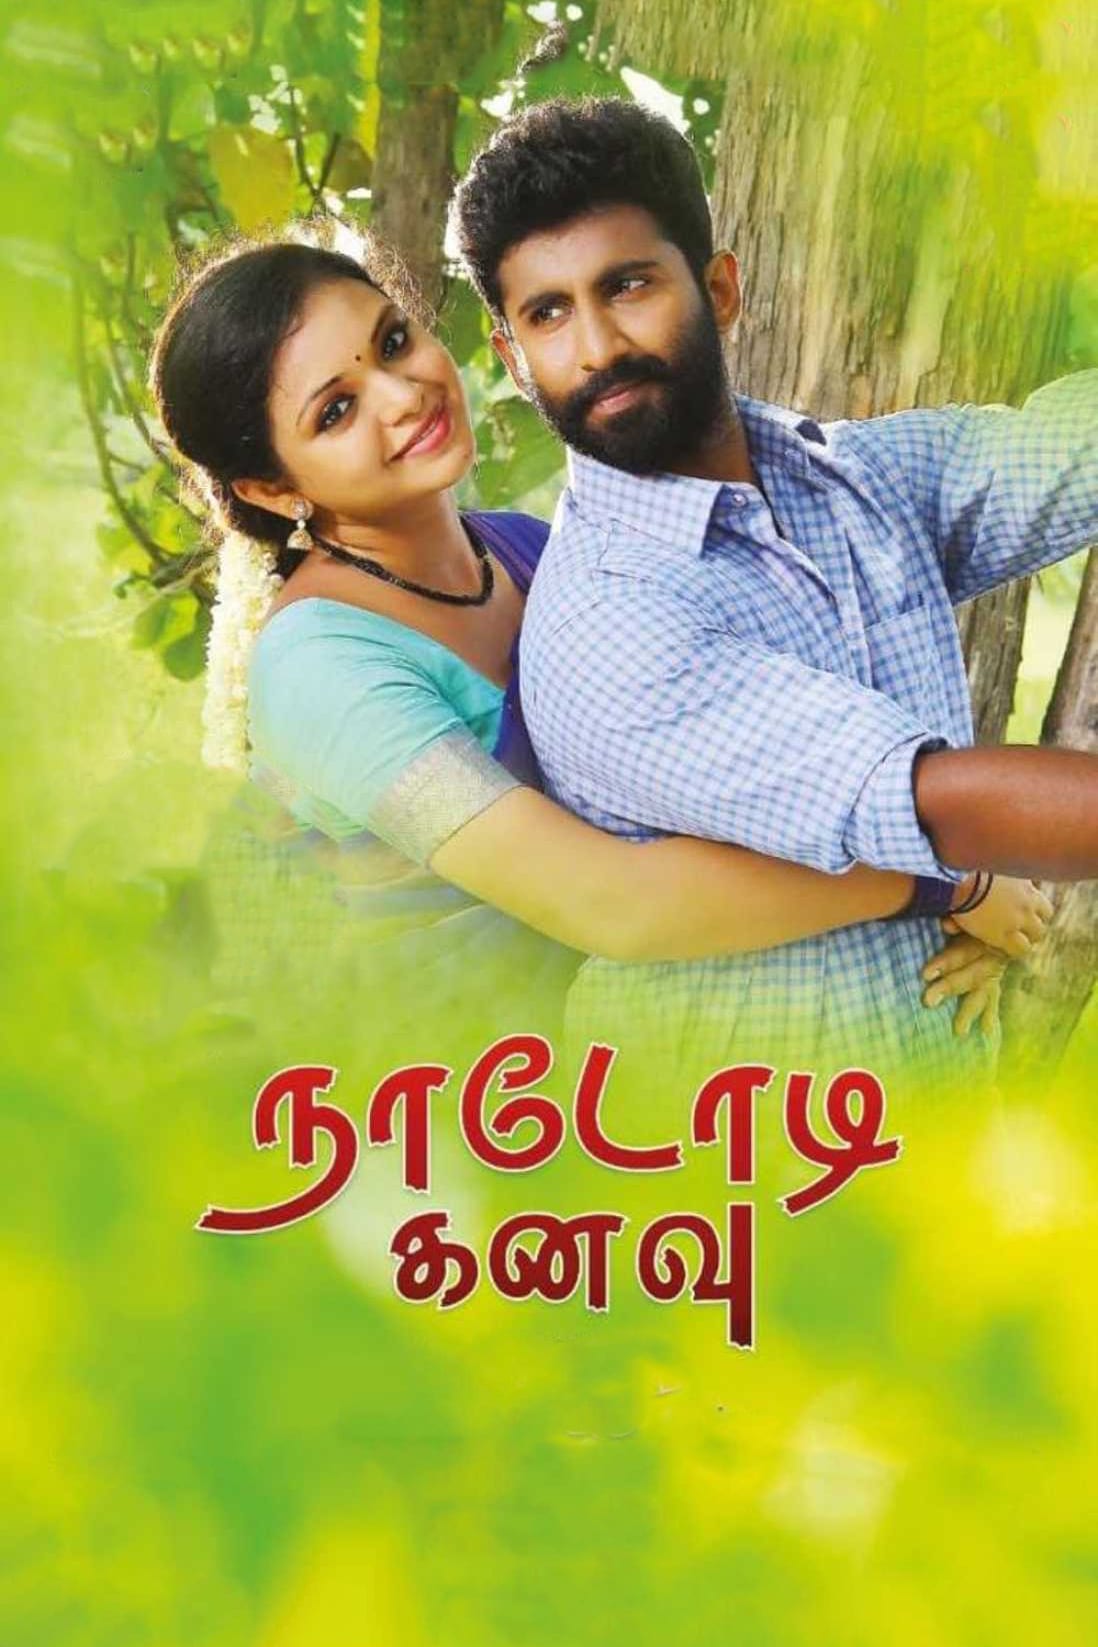 Poster for the movie "Nadodi Kanavu"